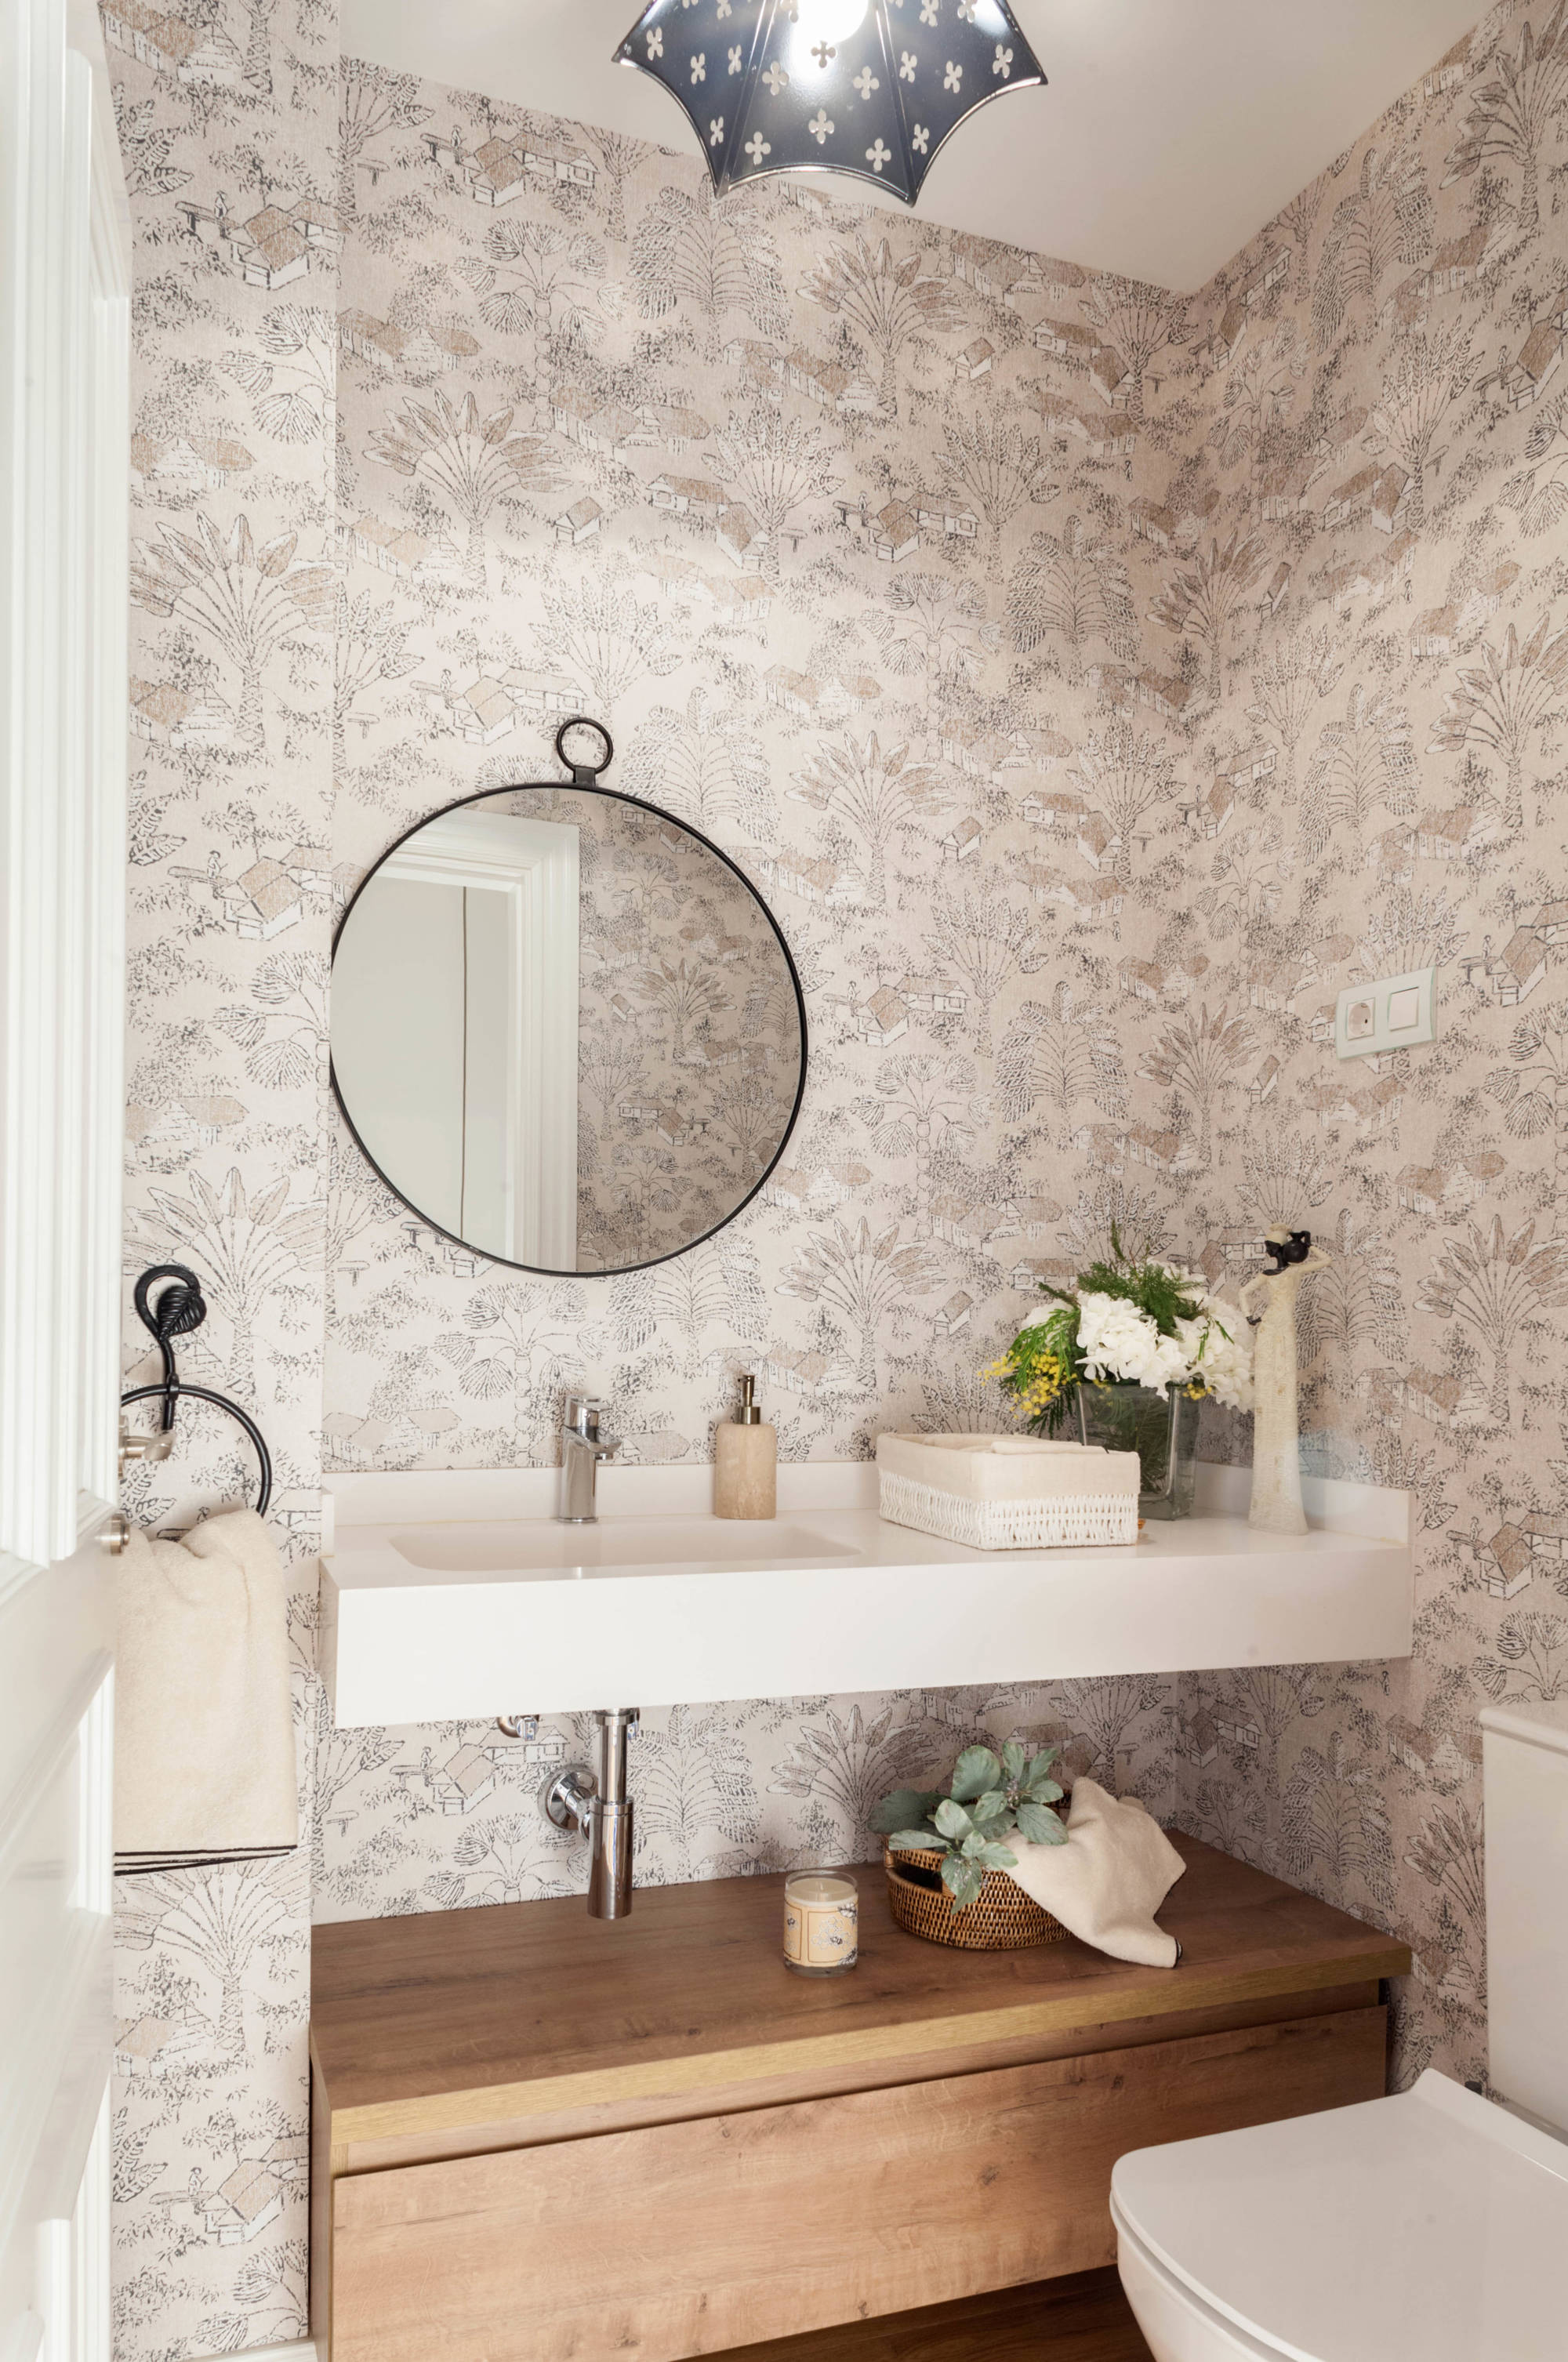 Baño pequeño con papel pintado con mueble hecho a medida y espejo redondo.